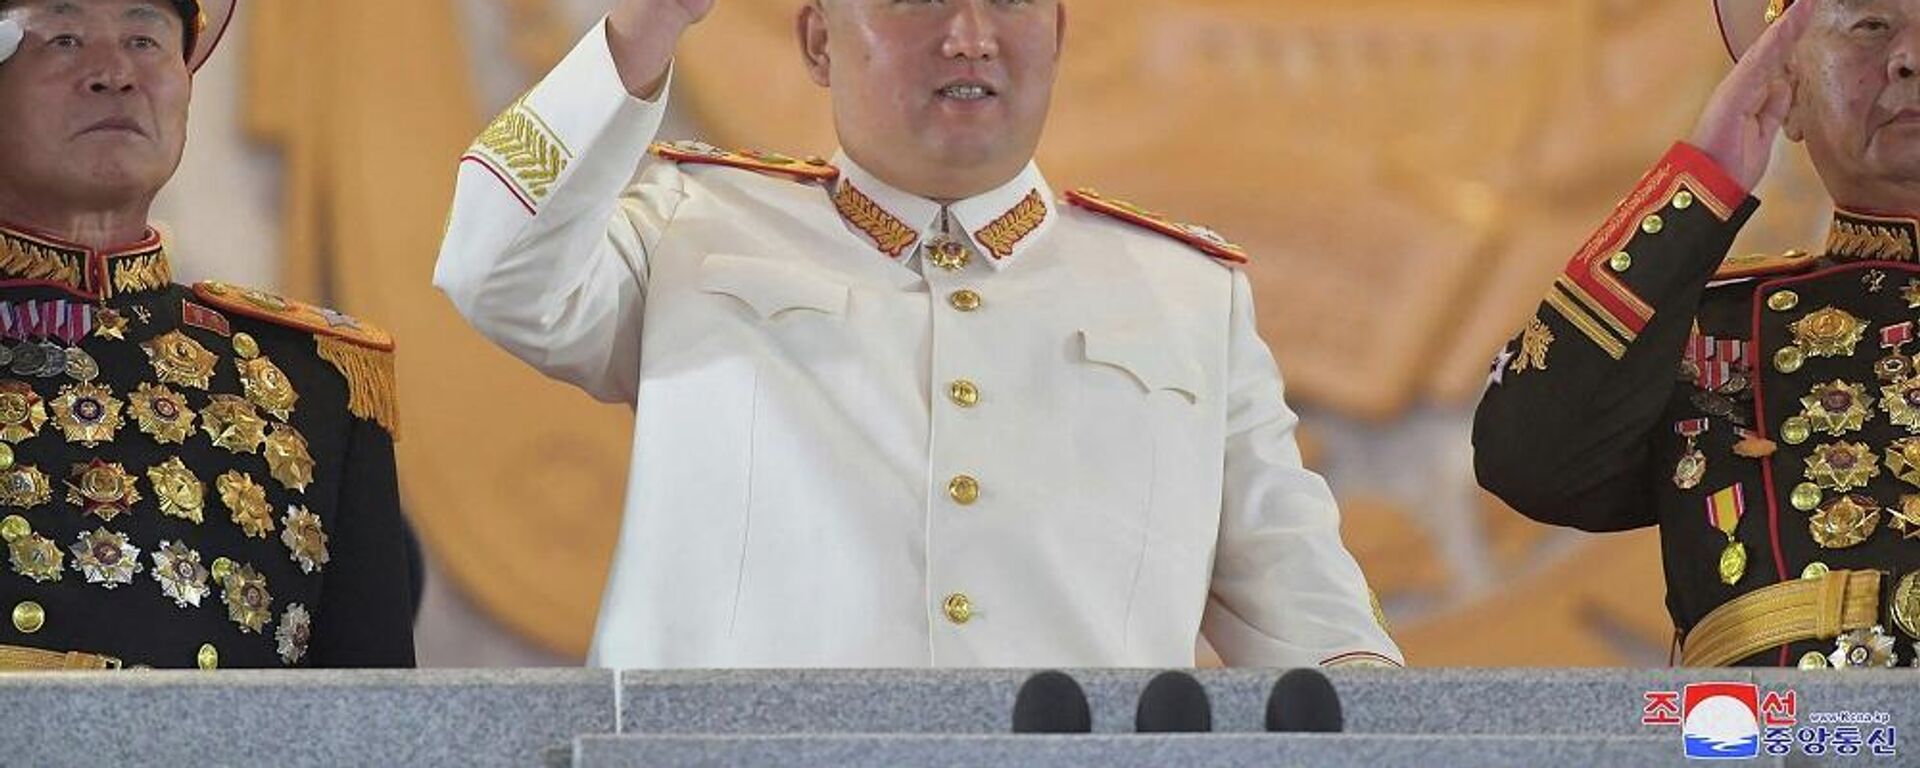 زعيم كوريا الشمالية، كيم جونغ أون، يشارك في عرض عسكري كبير أقيم في ساحة كيم إيل سونغ في بيونغ يانغ، 26 نيسان/ أبريل 2022 - سبوتنيك عربي, 1920, 18.04.2023